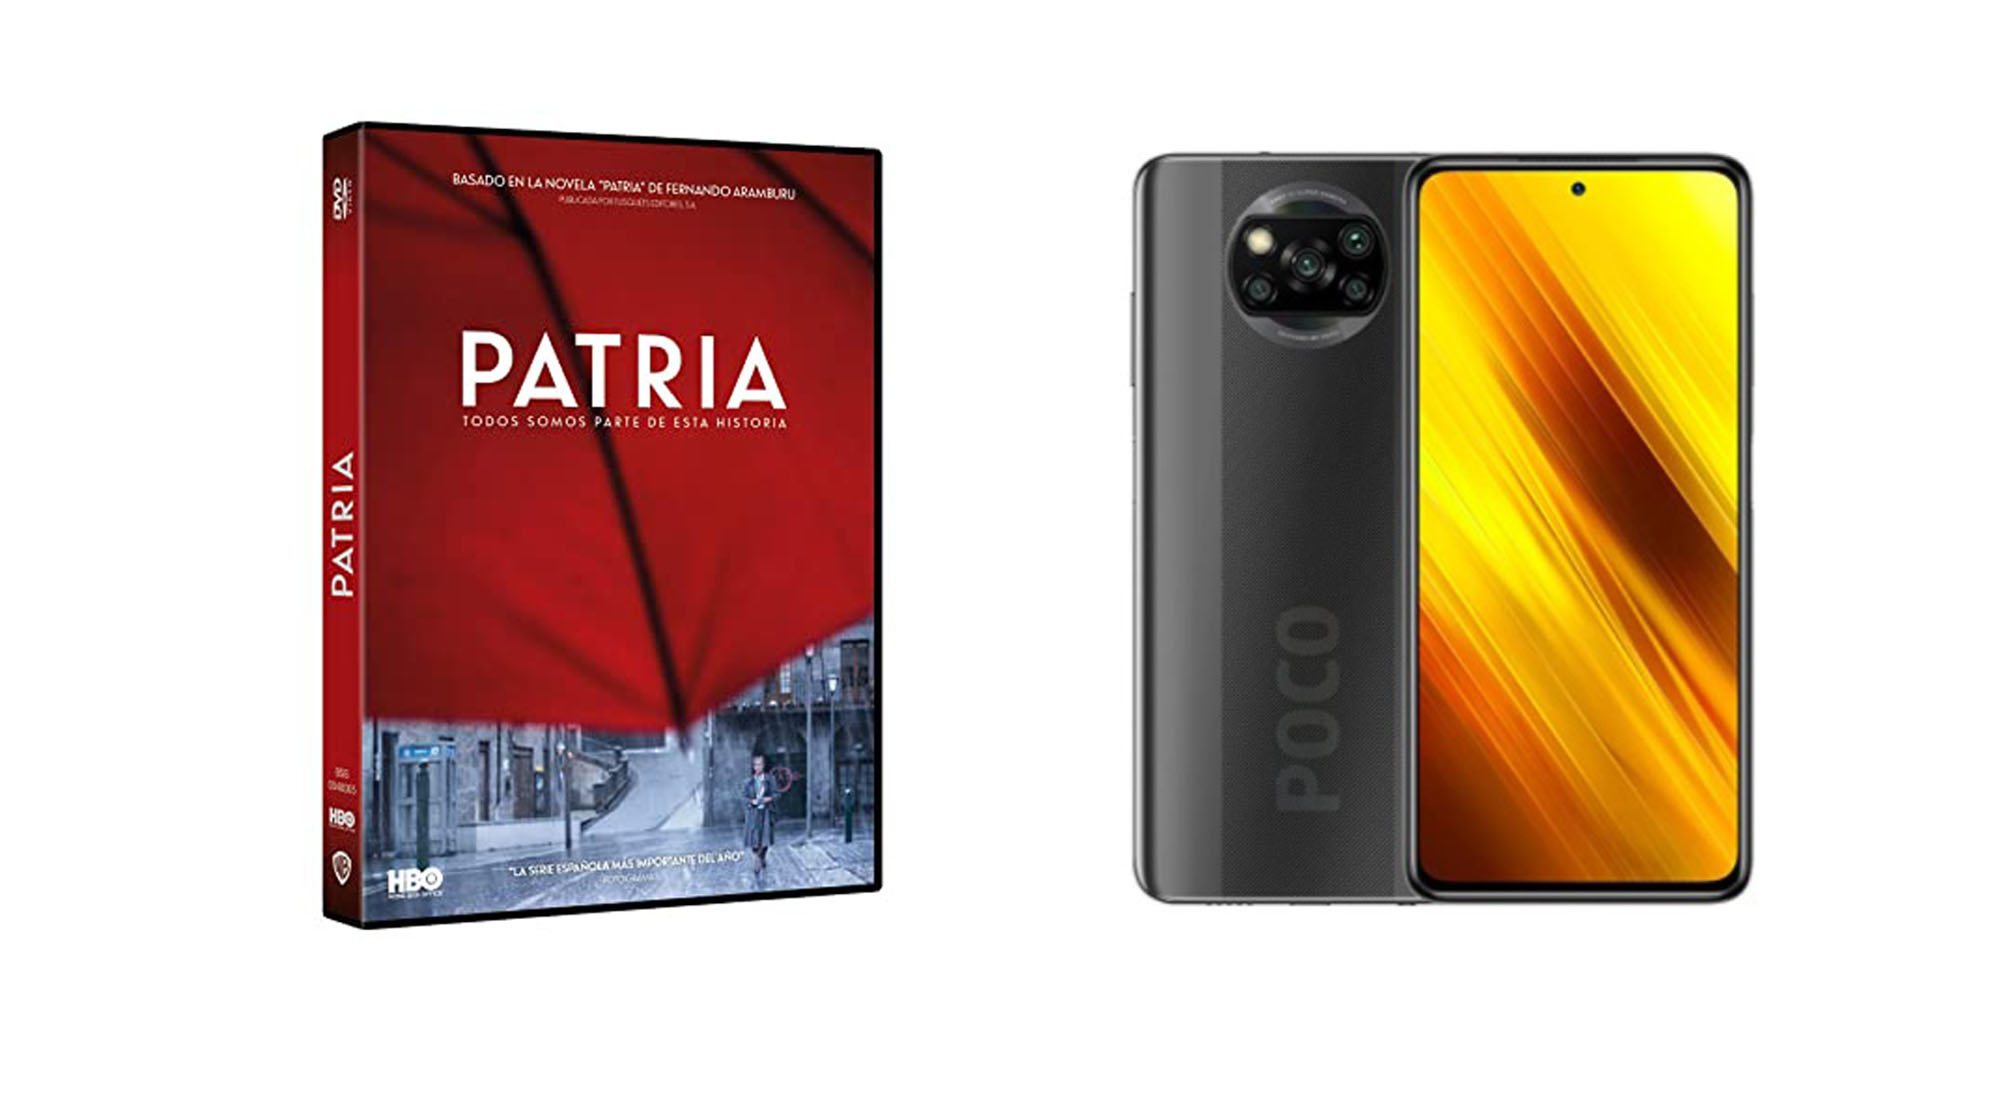 DVD de 'Patria' y smartphone de Xiaomi